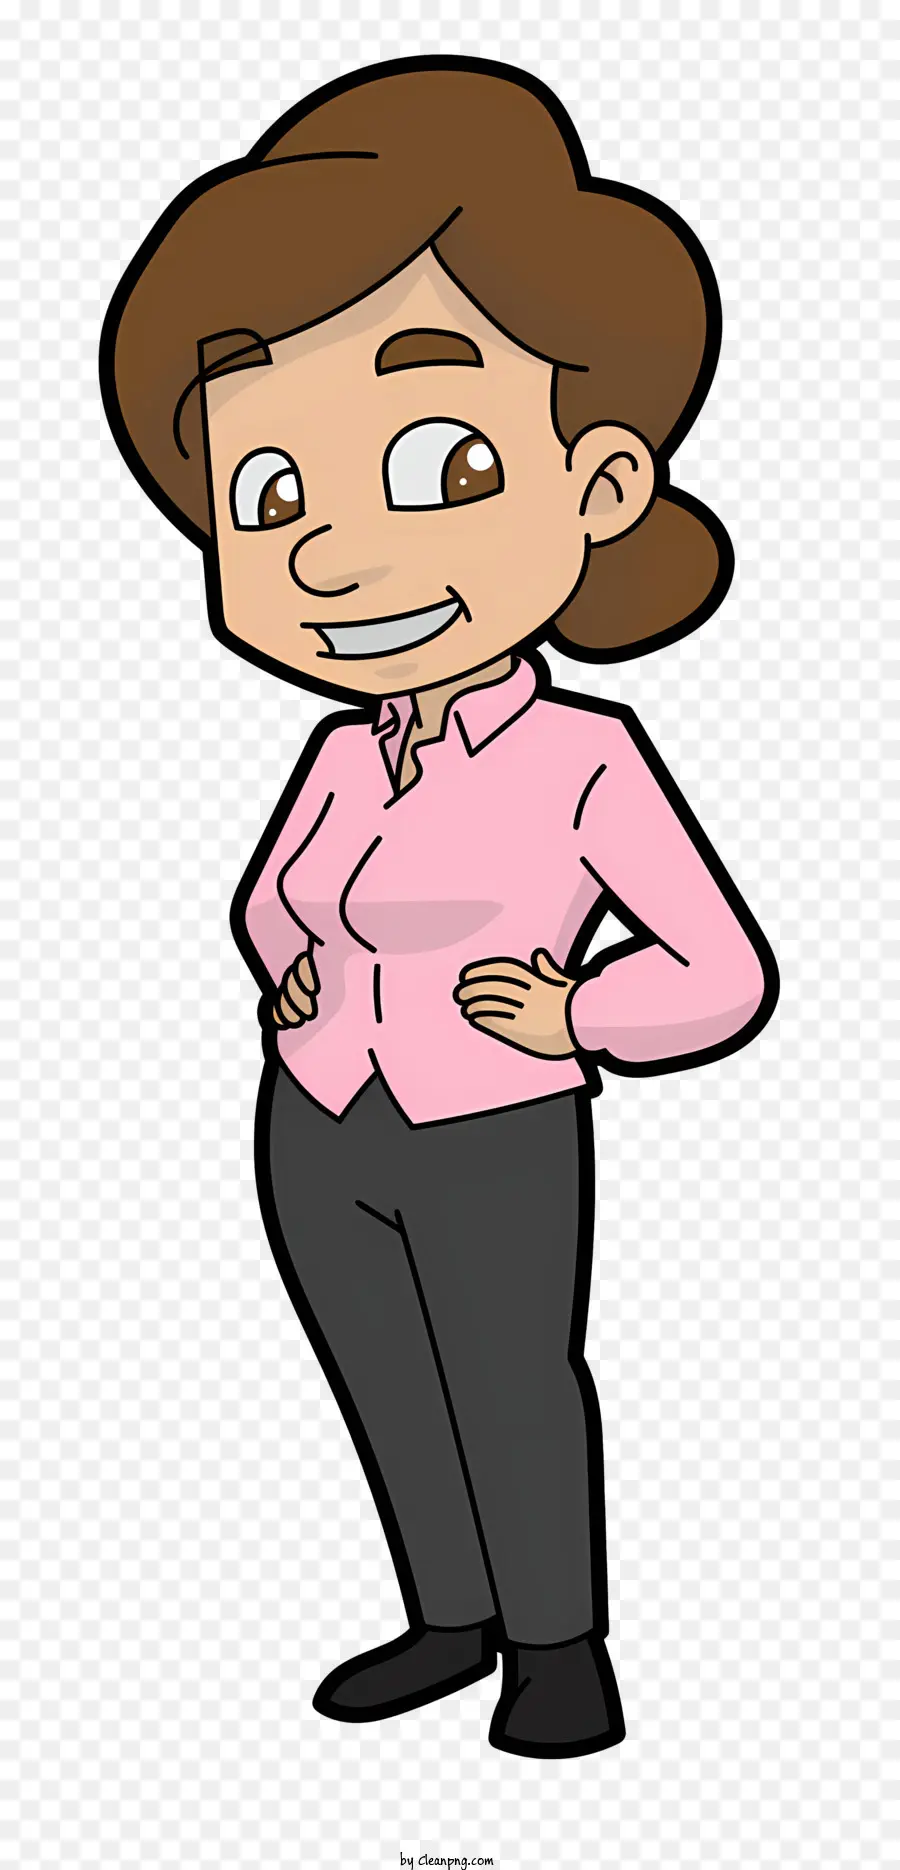 Persone personaggio dei cartoni animati personaggio femminile Mid 20s Pink Blouse - Carattere di cartoni animati in camicetta rosa, pantaloni neri